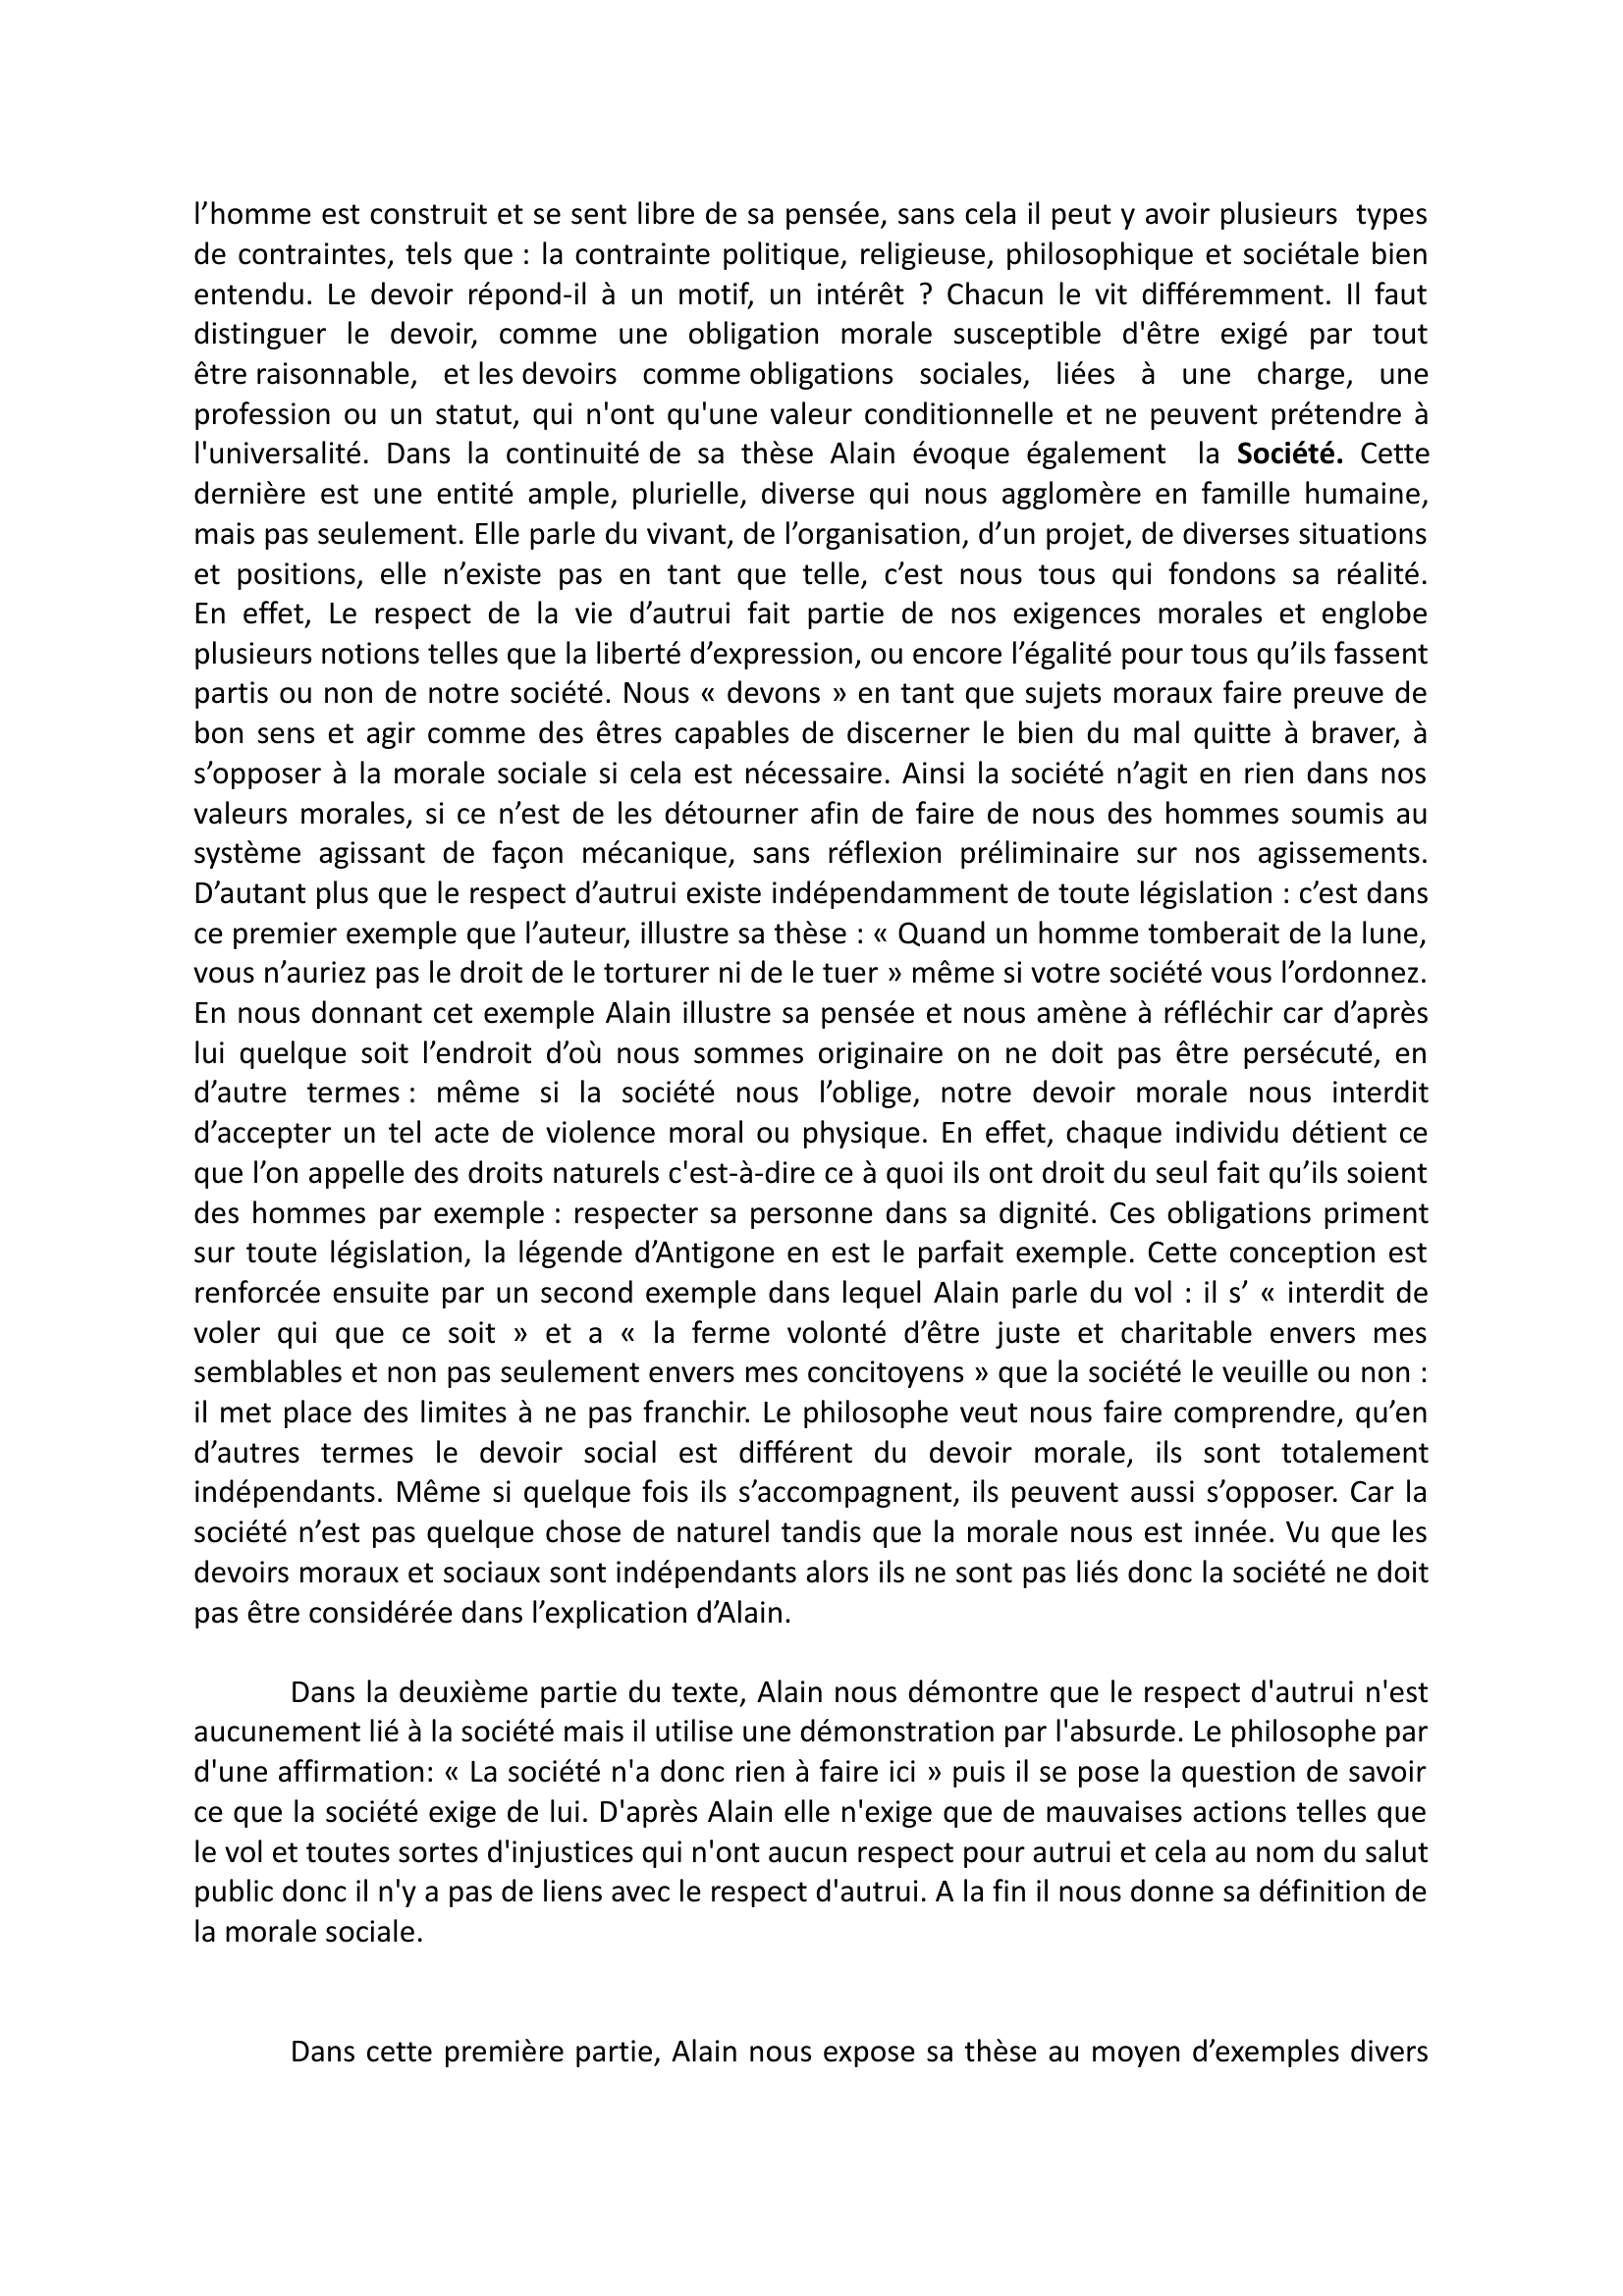 Prévisualisation du document Extrait de texte philosophique tiré de « Propos d'un Normand » d'Emile-Auguste Chartier dit Alain